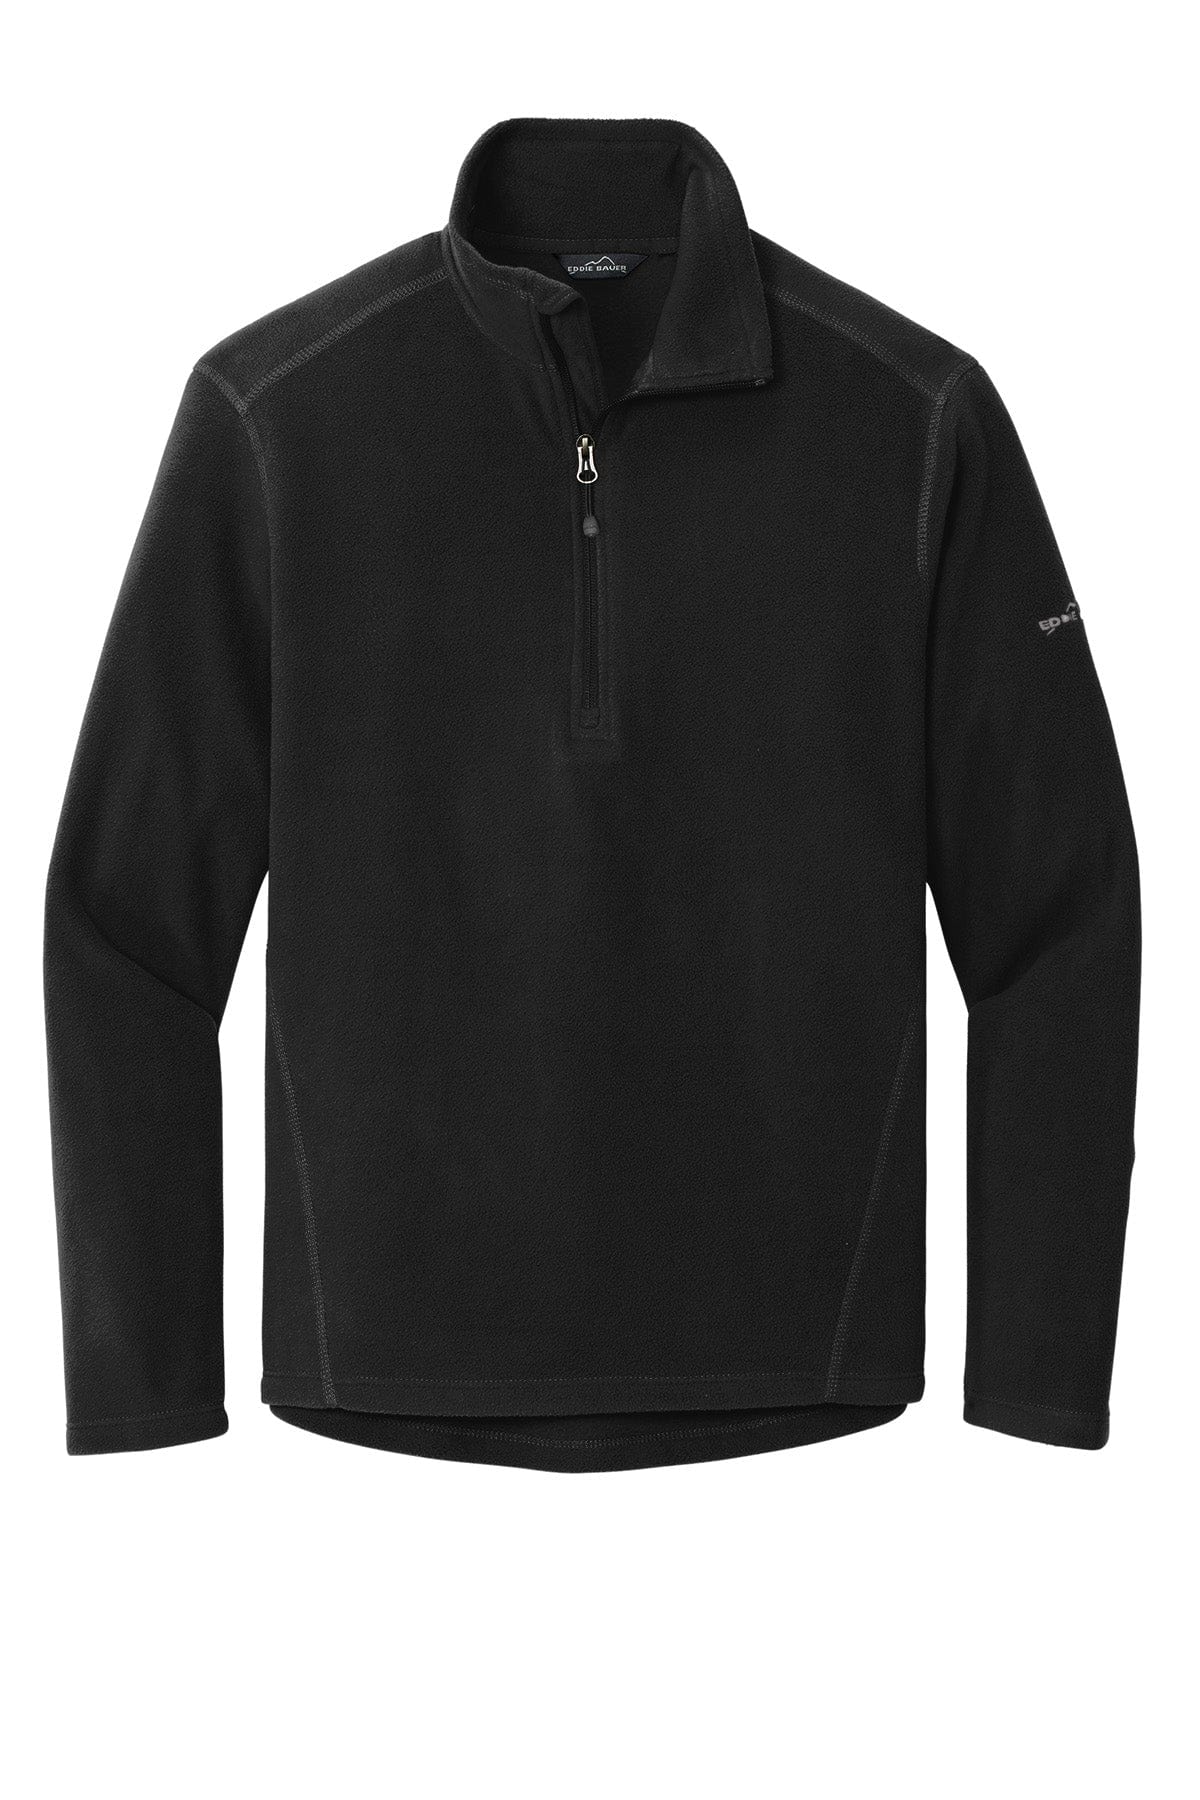 Black / Men's / XS Custom Eddie Bauer Half-Zip Microfleece Jacket